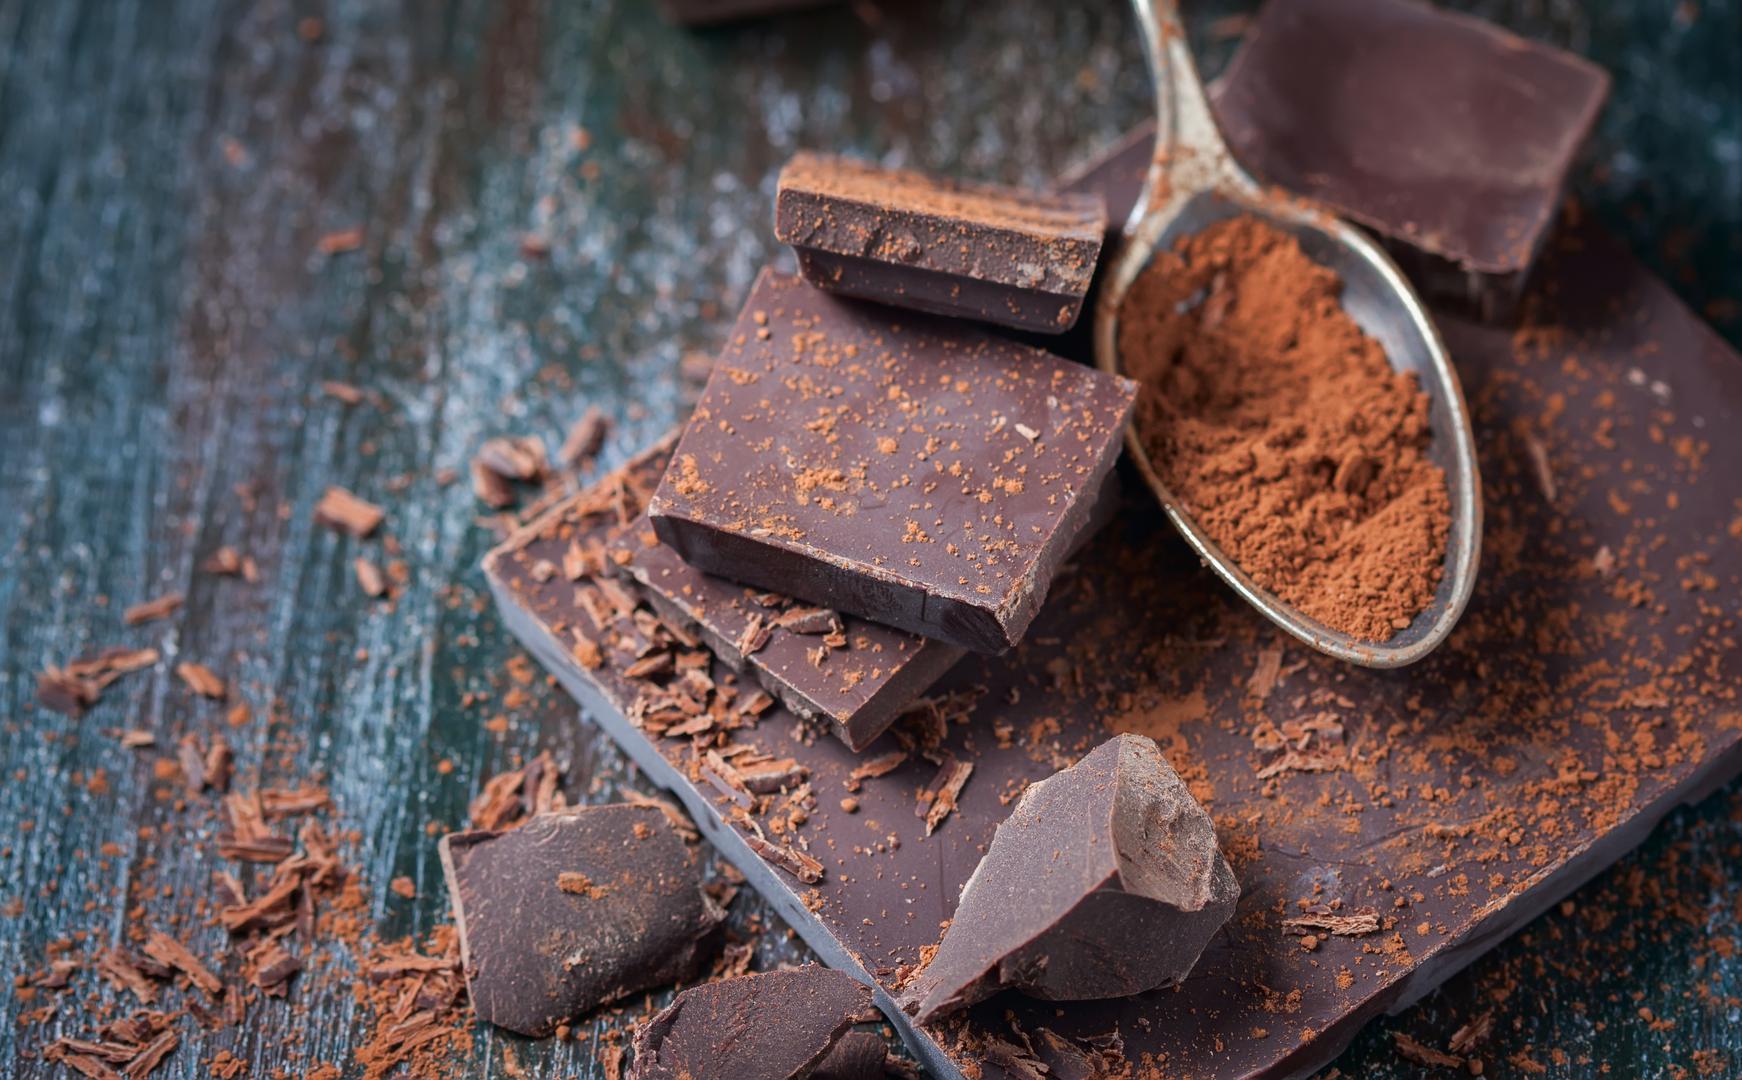 Tamna čokolada: Iako su voće i povrće vitalni za vašu prehranu, život se svodi na ravnotežu—a prema medicinskim stručnjacima, određeni slatkiši također mogu poboljšati izgled vaše kože. ‘Jedite tamnu čokoladu’, preporučuje plastični kirurg Anthony Youn, ‘Tamna čokolada je puna polifenola i antioksidansa i odlična je za vašu kožu’.  Međutim, trebali biste biti sigurni da čokolada koju uzmete sadrži najmanje 70 do 80 posto kakaovca. ‘Sve manje od toga vjerojatno će sadržavati previše šećera da bi bilo dobro za vas’, objašnjava Youn.